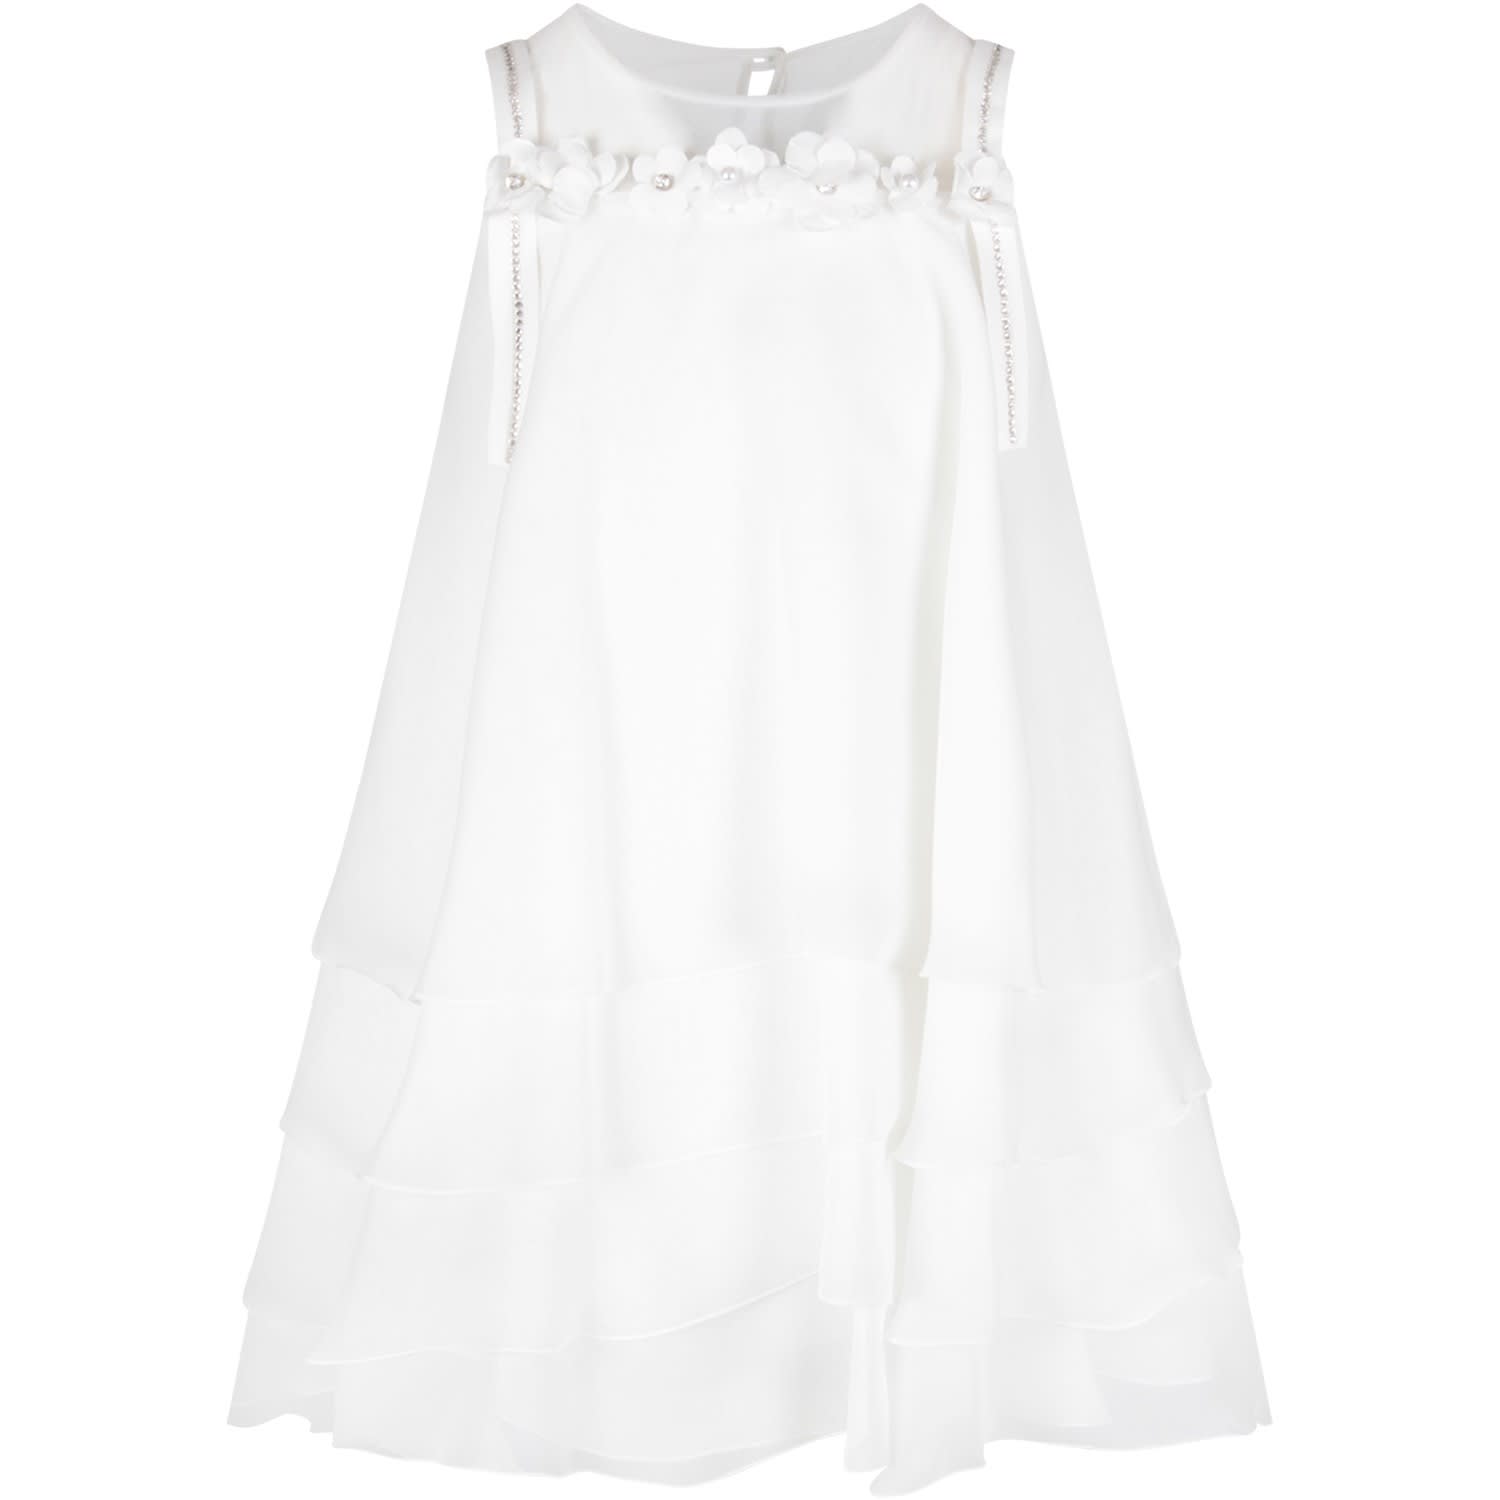 Loredana White Dress For Girl With Rhinestones